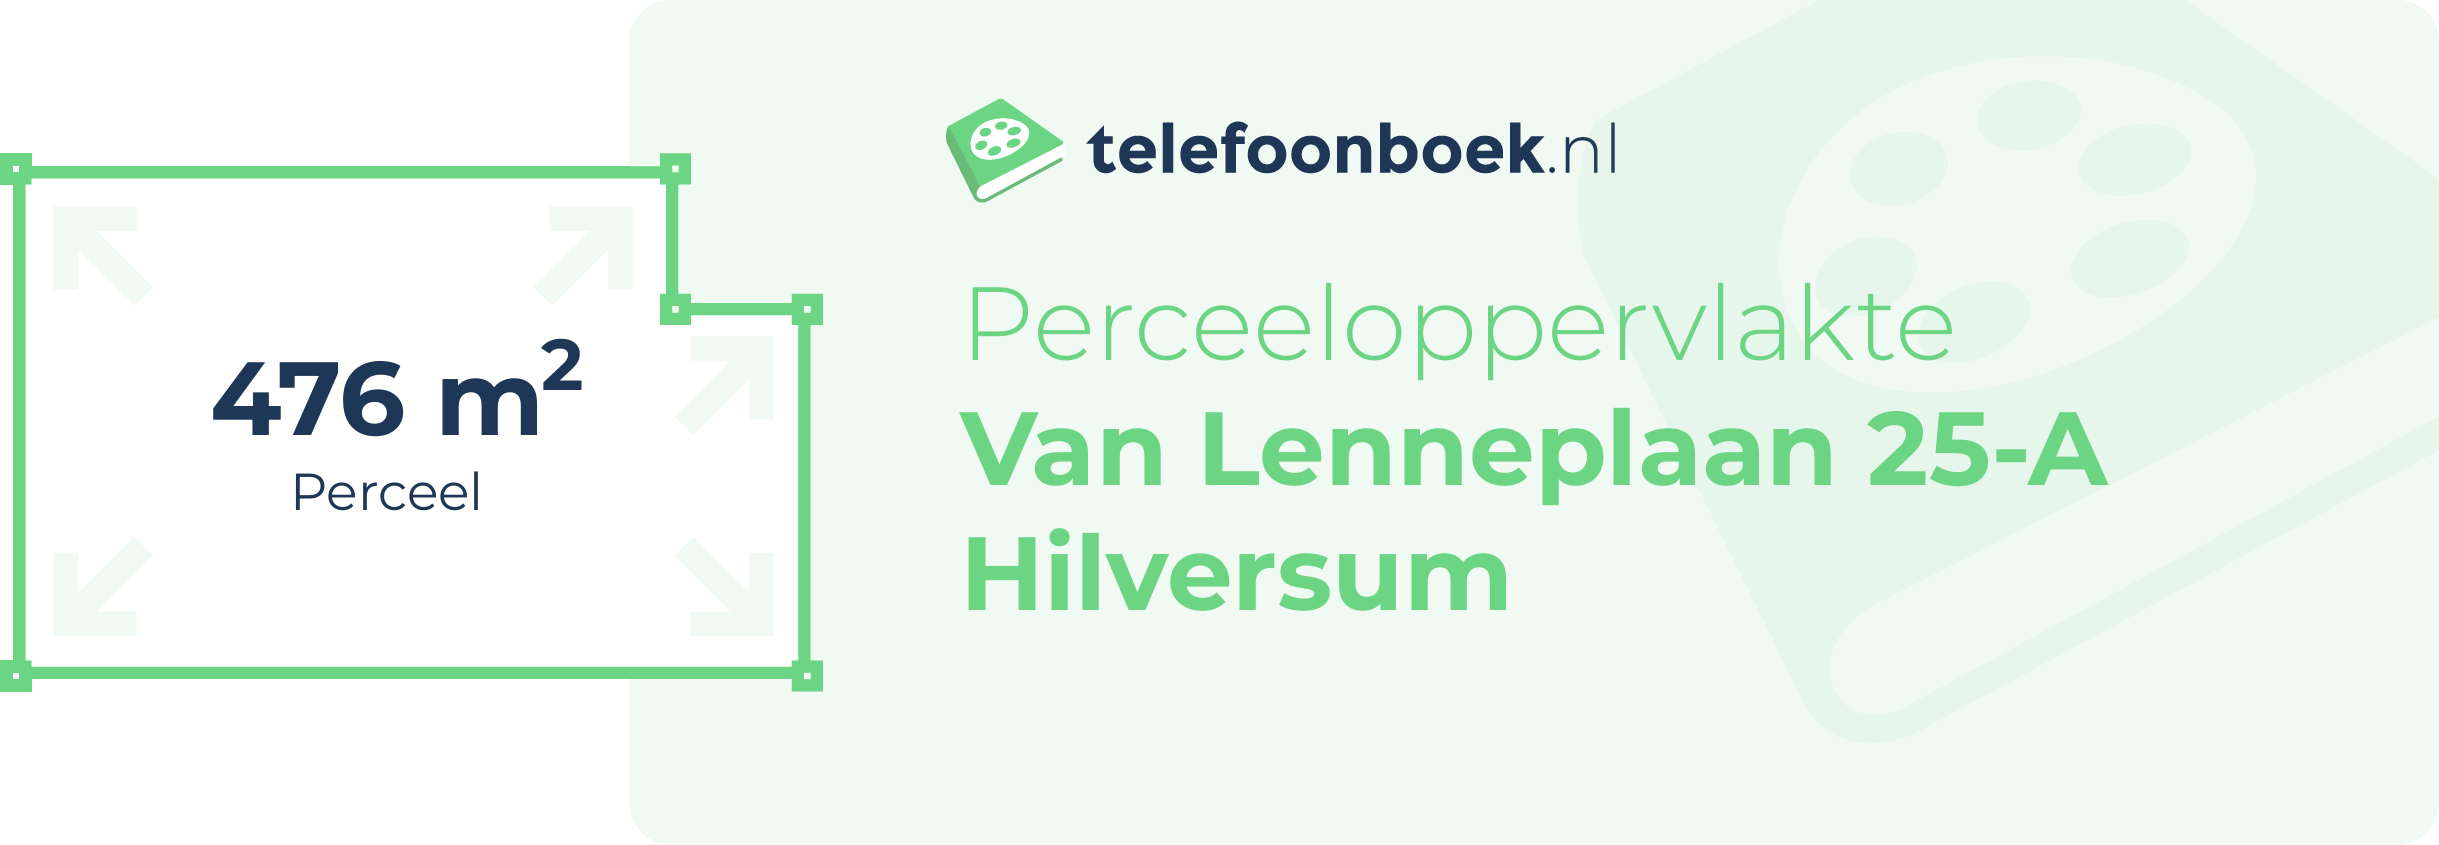 Perceeloppervlakte Van Lenneplaan 25-A Hilversum